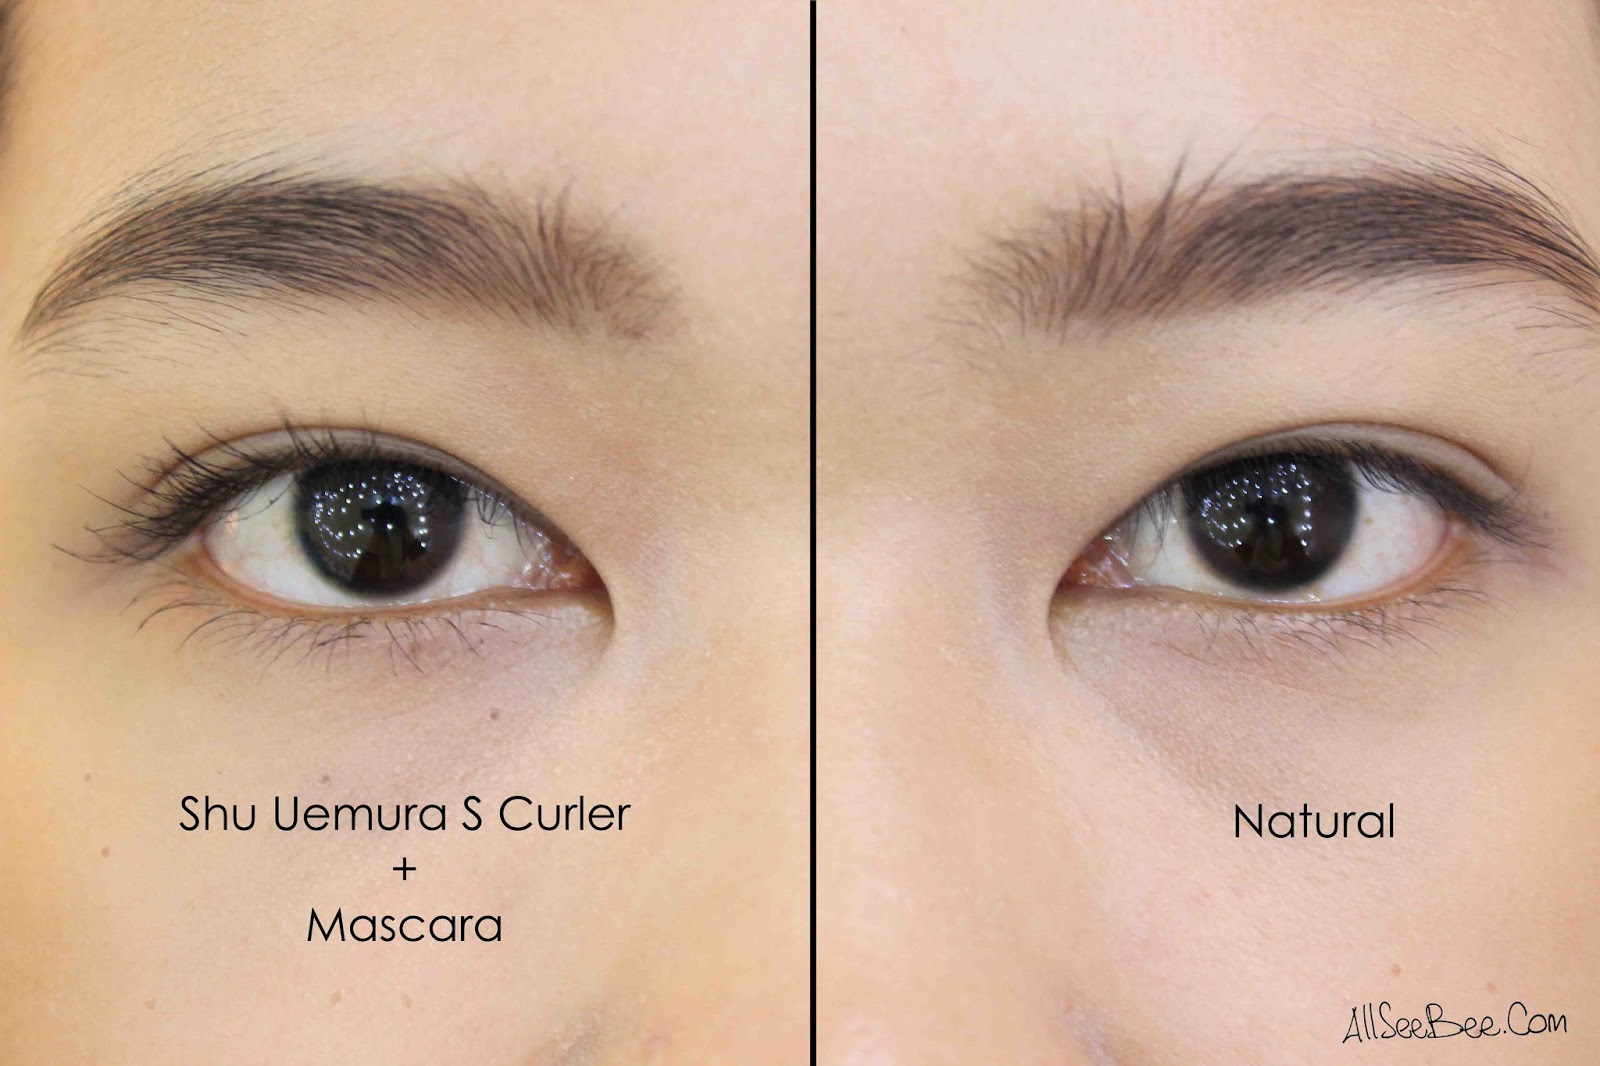 Review & Comparison: Chanel vs Shu Uemura Eyelash Curler